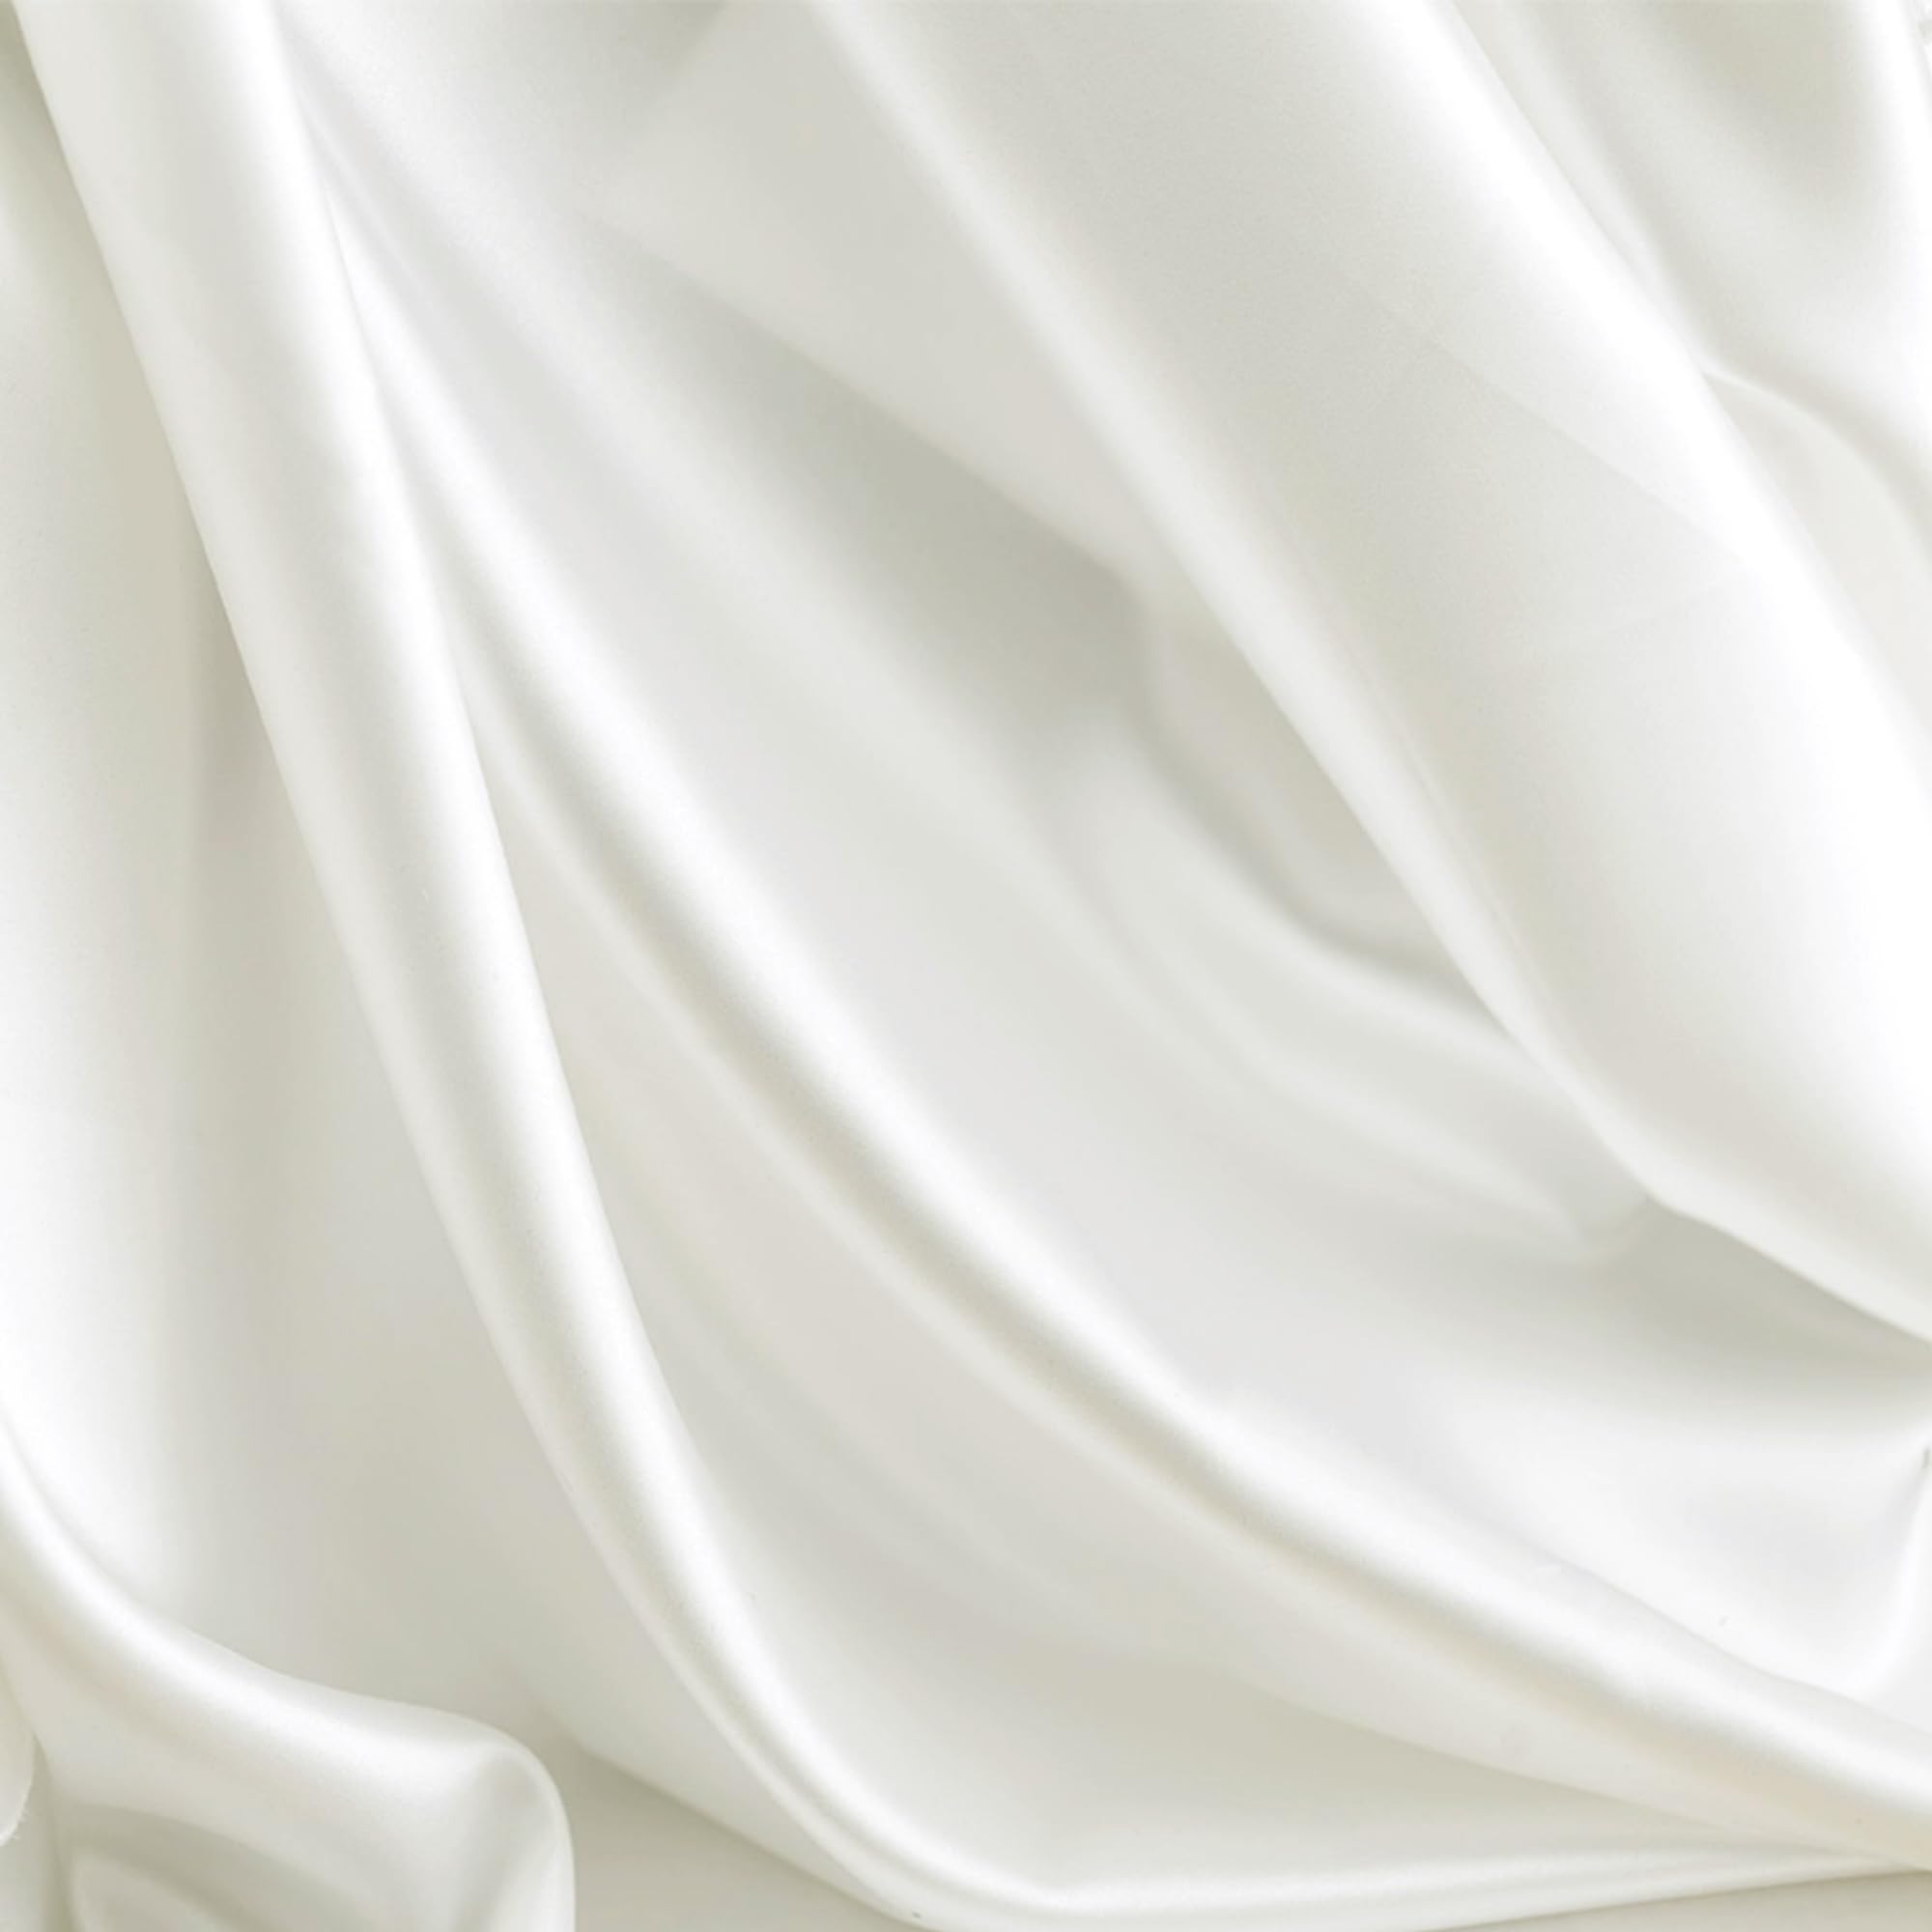 DERAYEE シルク風 サテン生地 織物 生地 輝き 約142cm×200cmカット 肌触りの良い 選べる5色 手作り DIY 裁縫 手芸 贈り物 (2M, ホワイト)